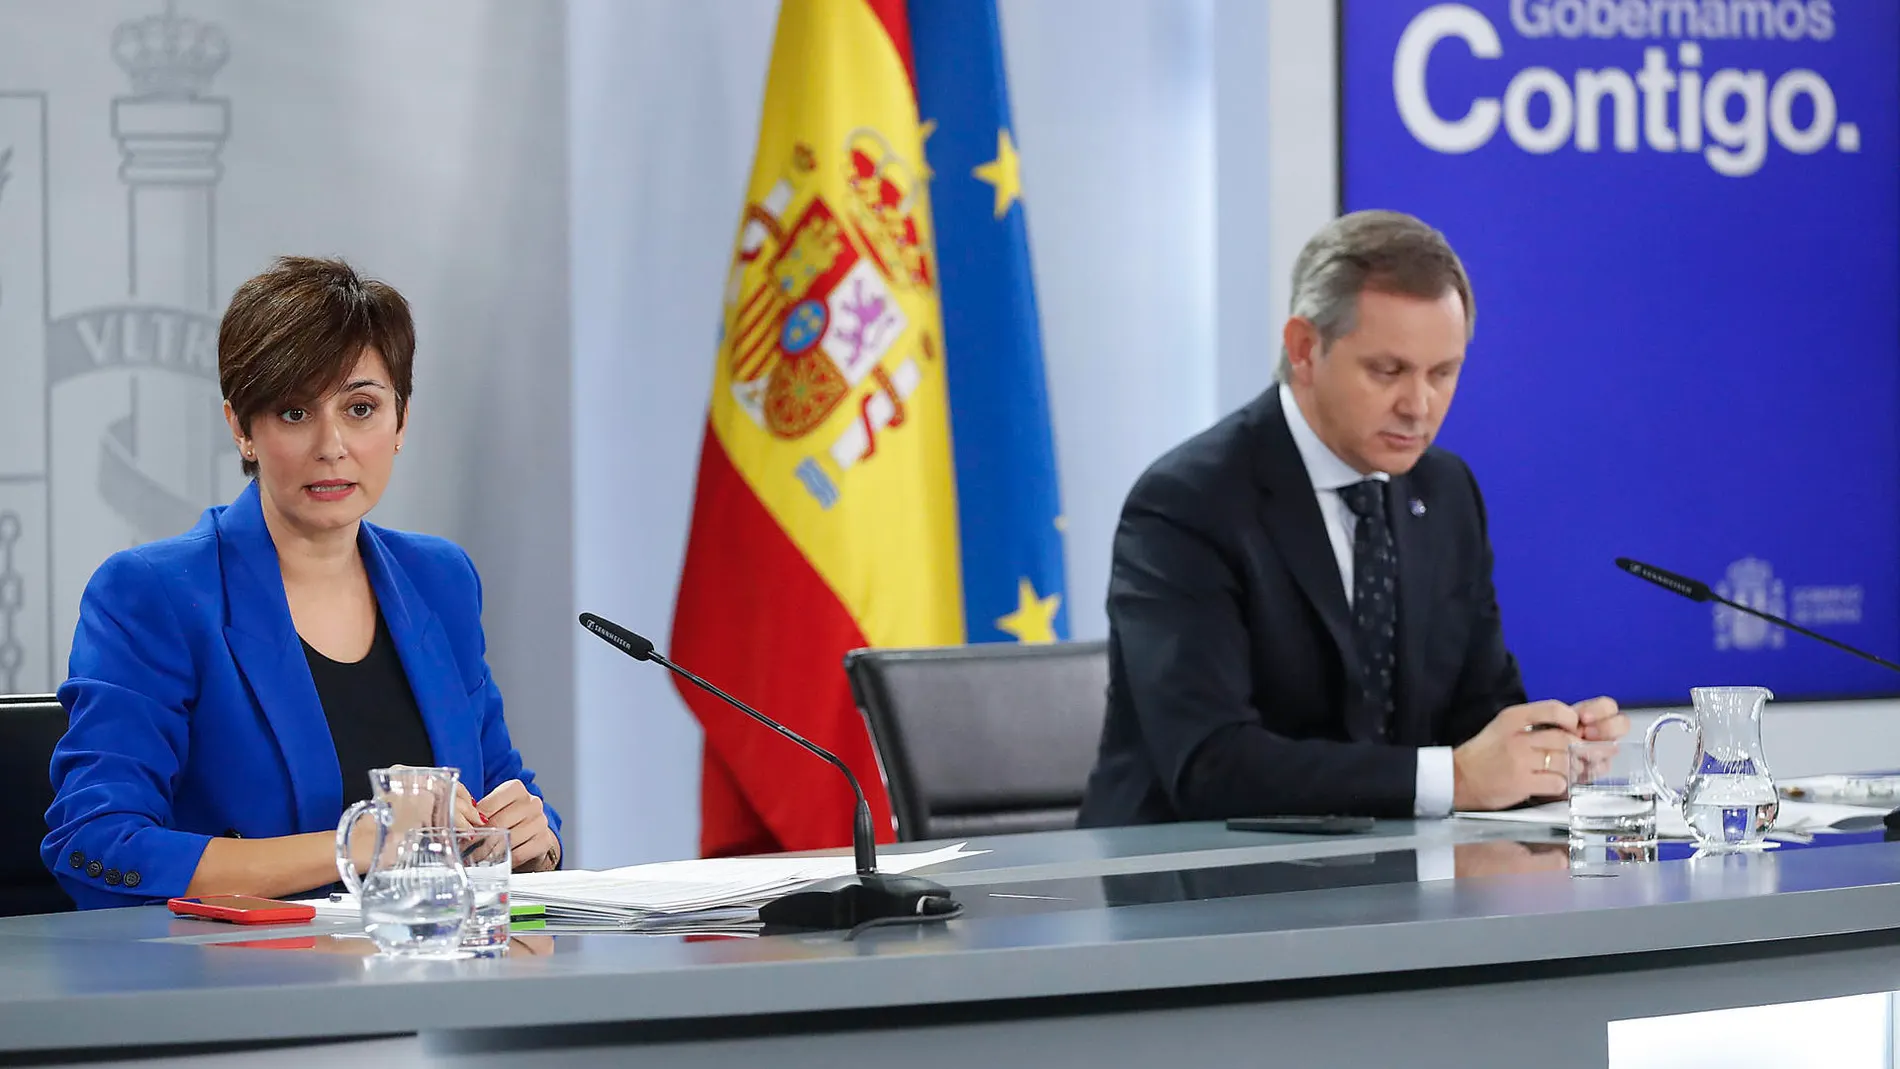 La portavoz del Gobierno y ministra de Política Territorial, Isabel Rodríguez, y el Ministro de Sanidad, José Manuel Miñones